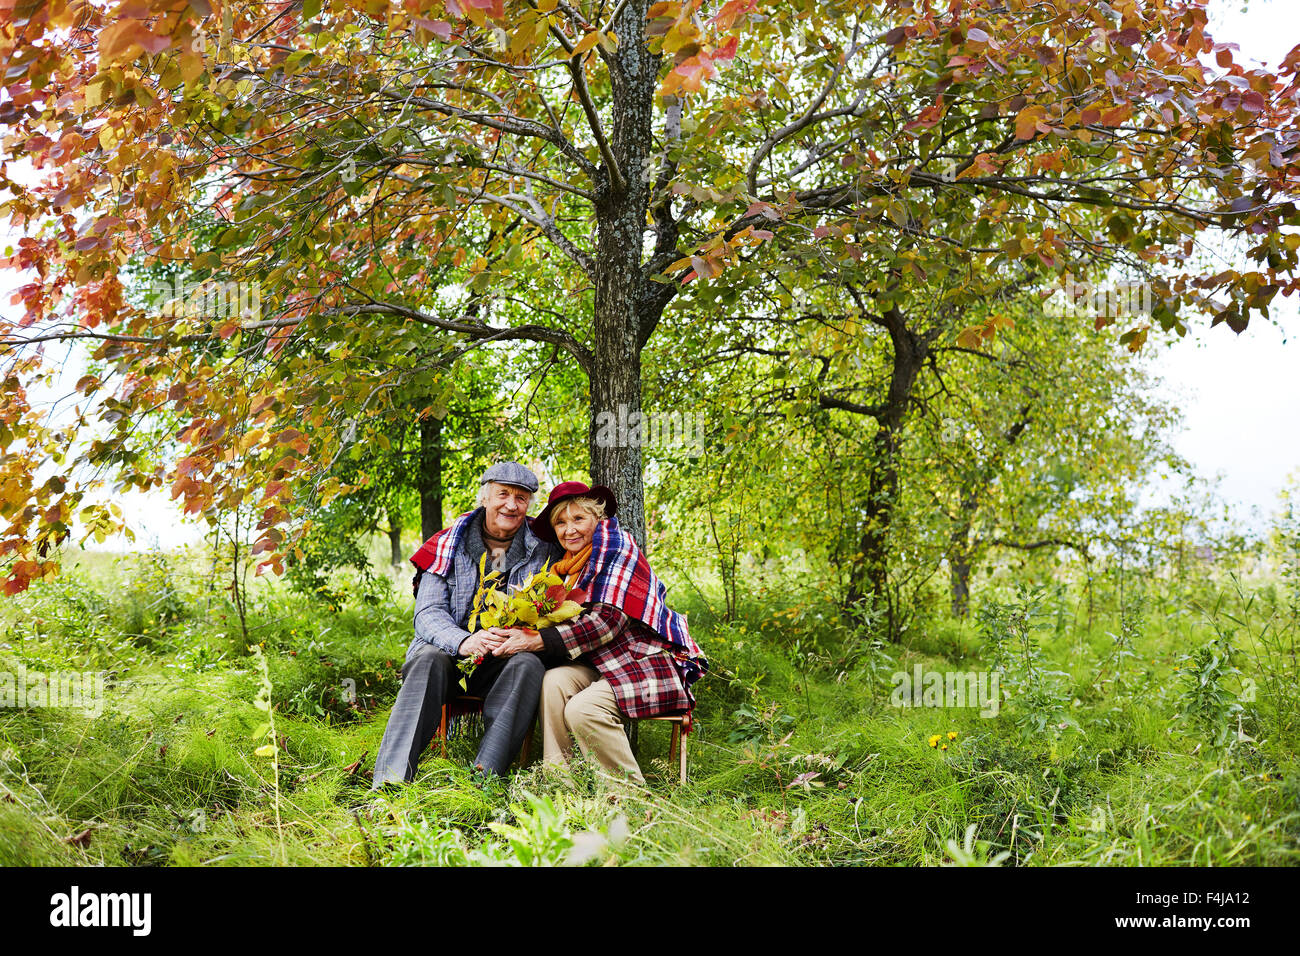 Älteres Ehepaar Sitzt Unter Baum Im Park Im Herbst Stockfotografie Alamy